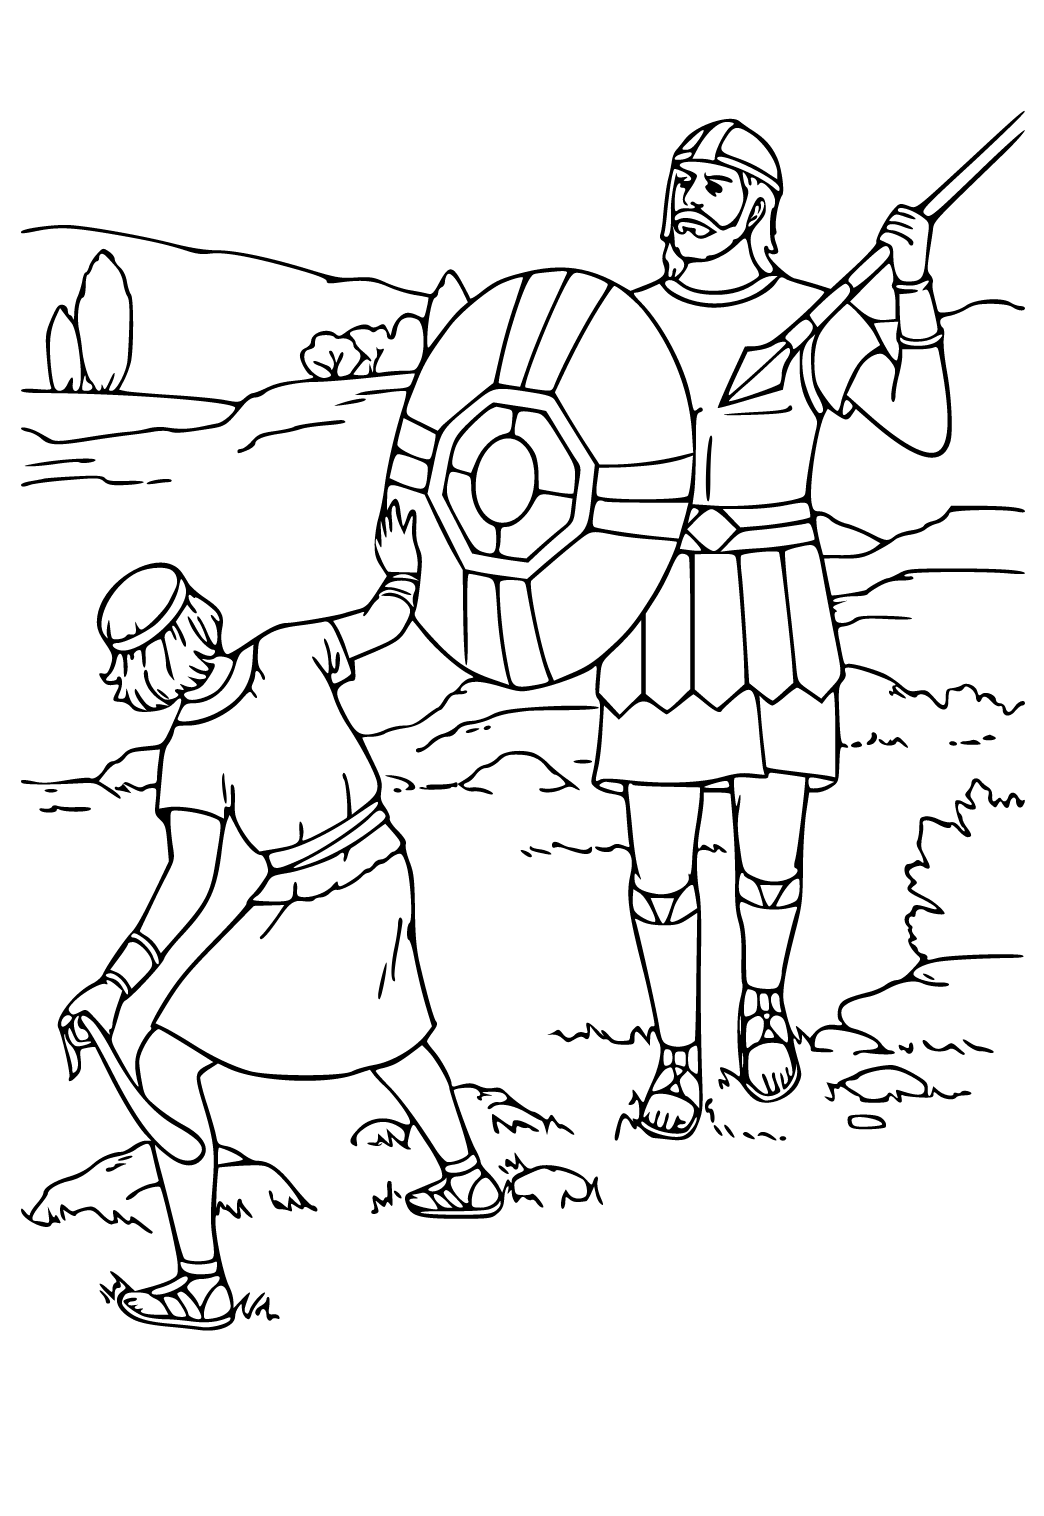 David ve Goliath